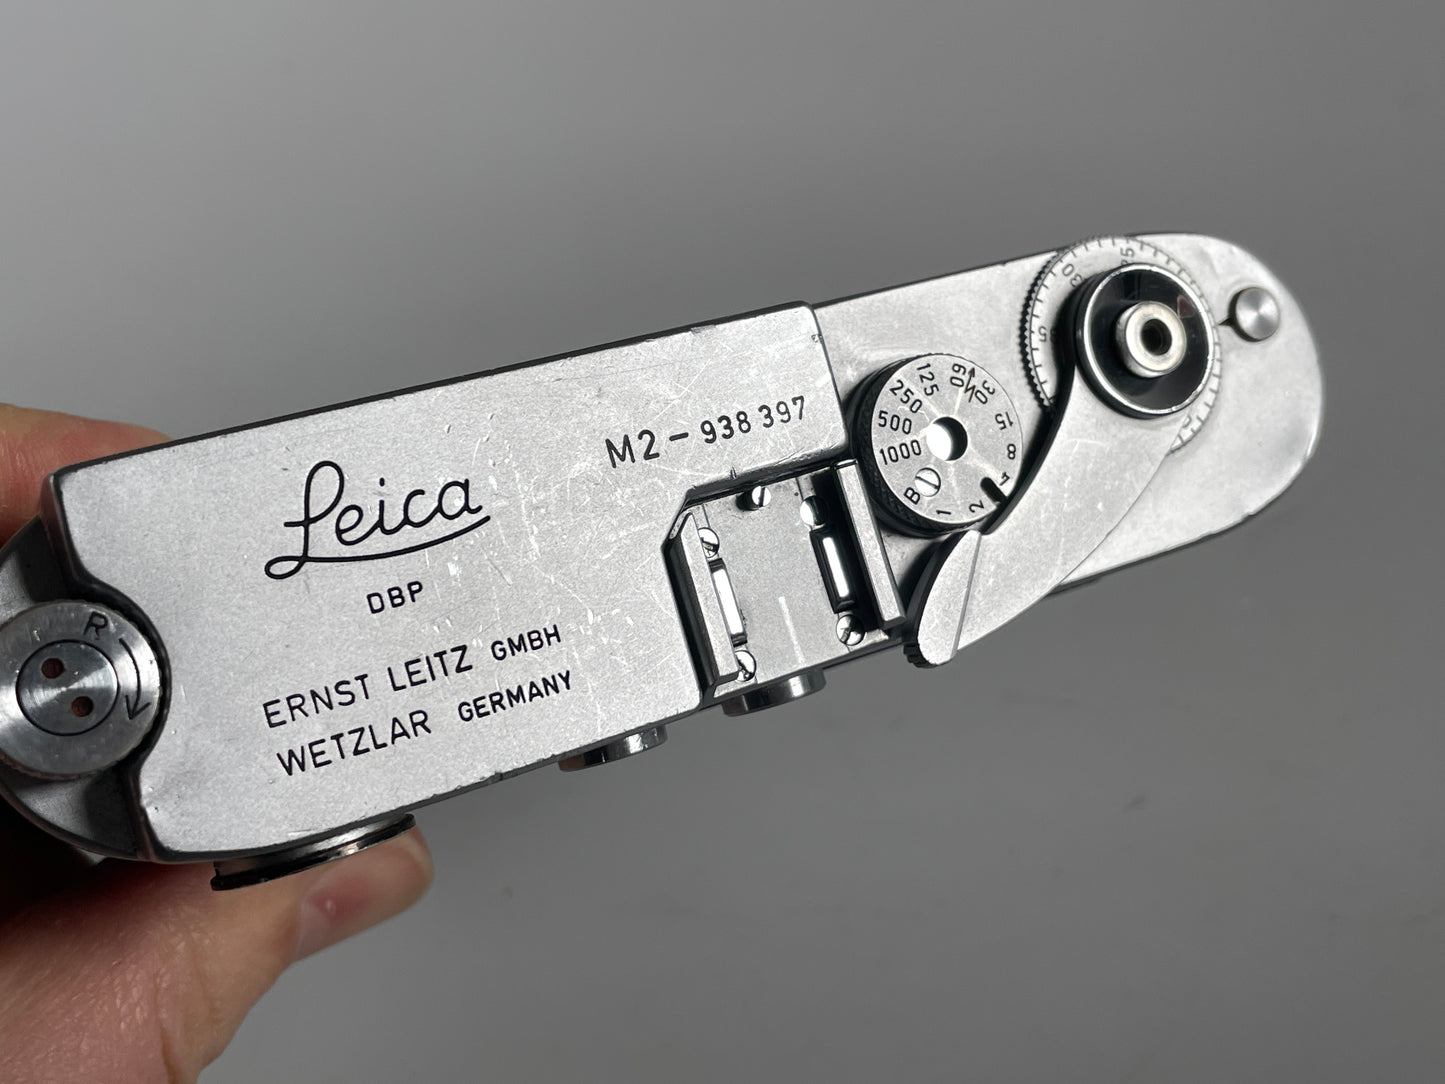 Leica M2 button rewind Chrome 35mm rangefinder film camera body